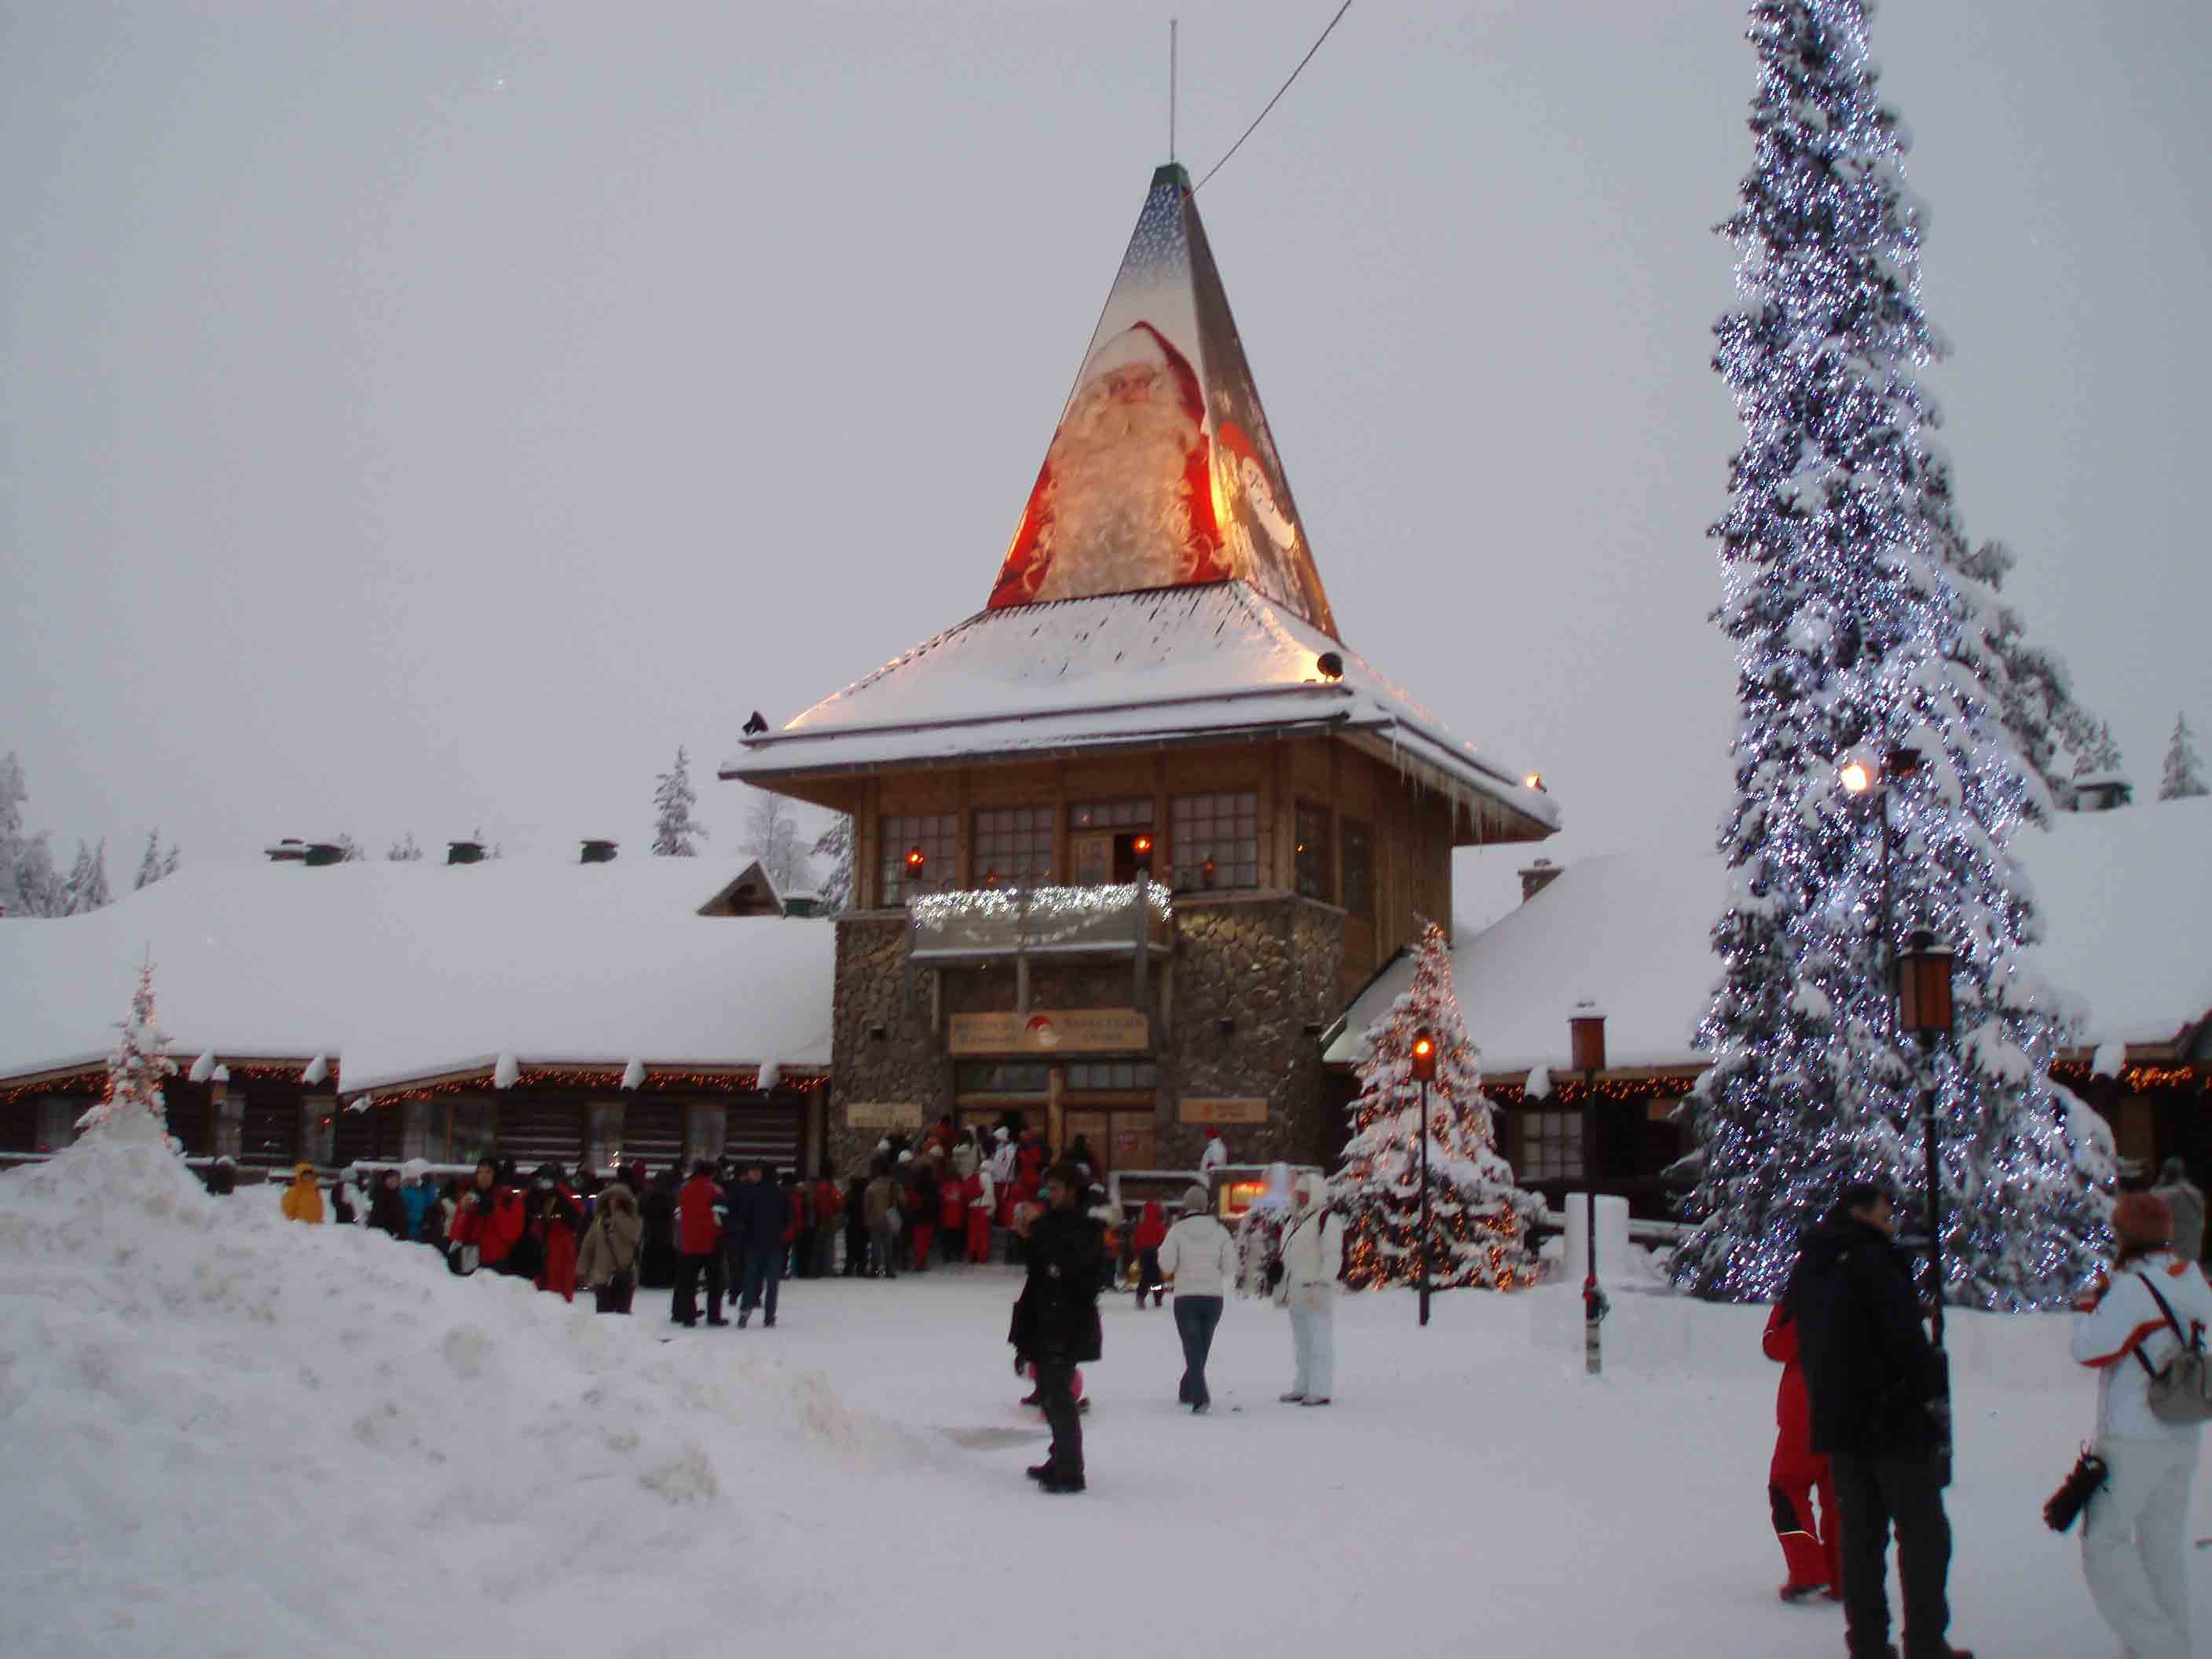 Santa Claus' Village na Finlândia (Foto: Wikimedia/Ulla )